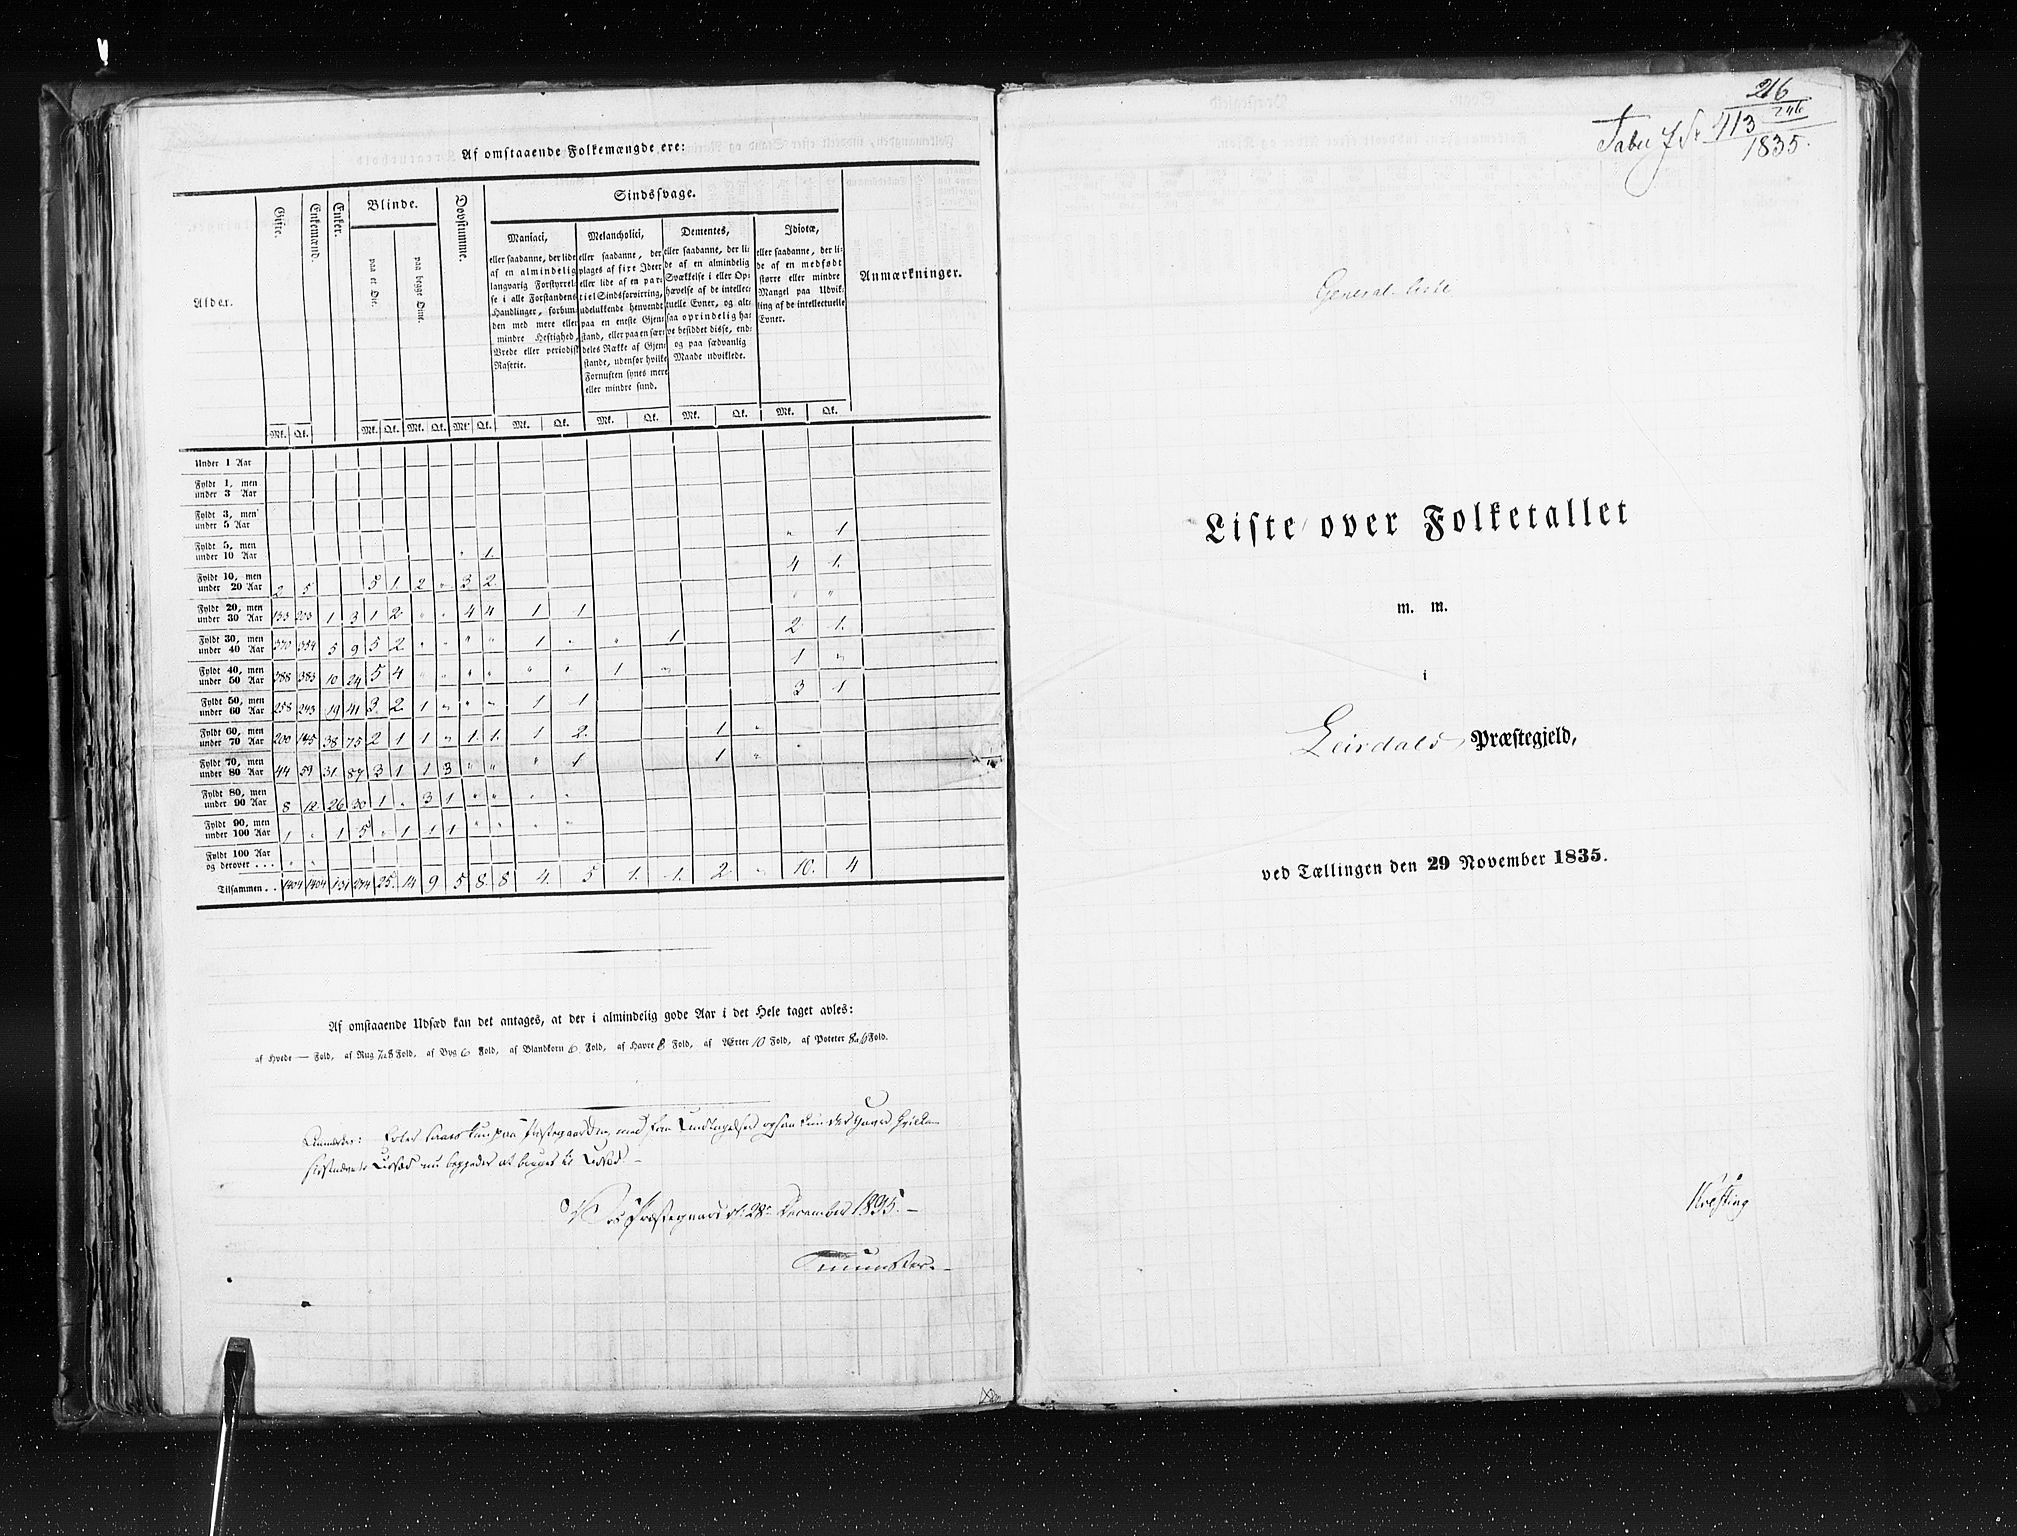 RA, Census 1835, vol. 7: Søndre Bergenhus amt og Nordre Bergenhus amt, 1835, p. 216